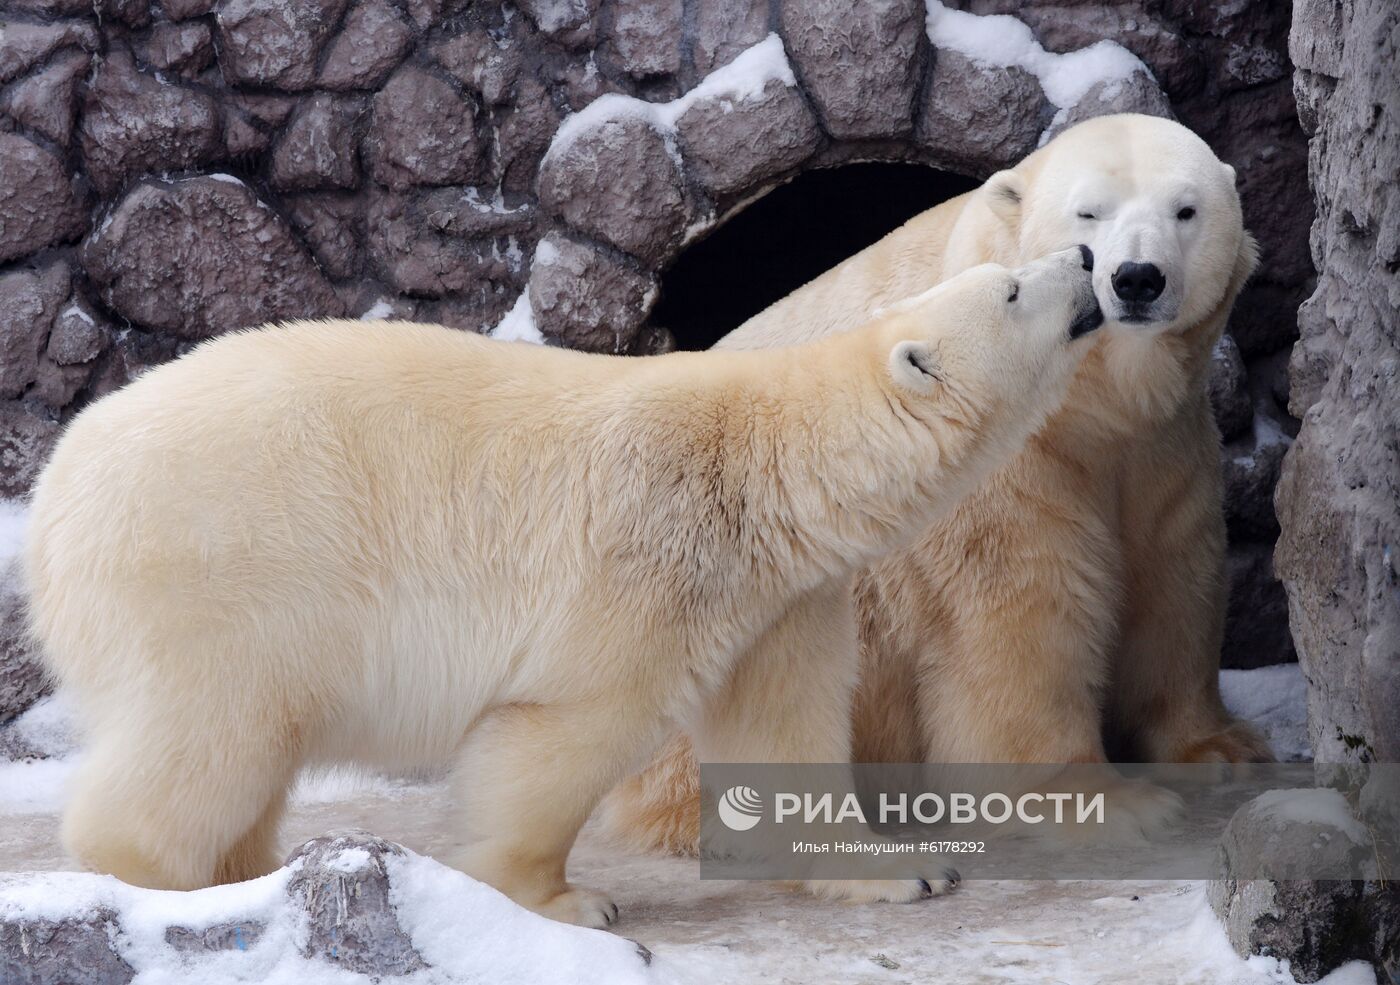 Парк флоры и фауны "Роев ручей" в Красноярске 